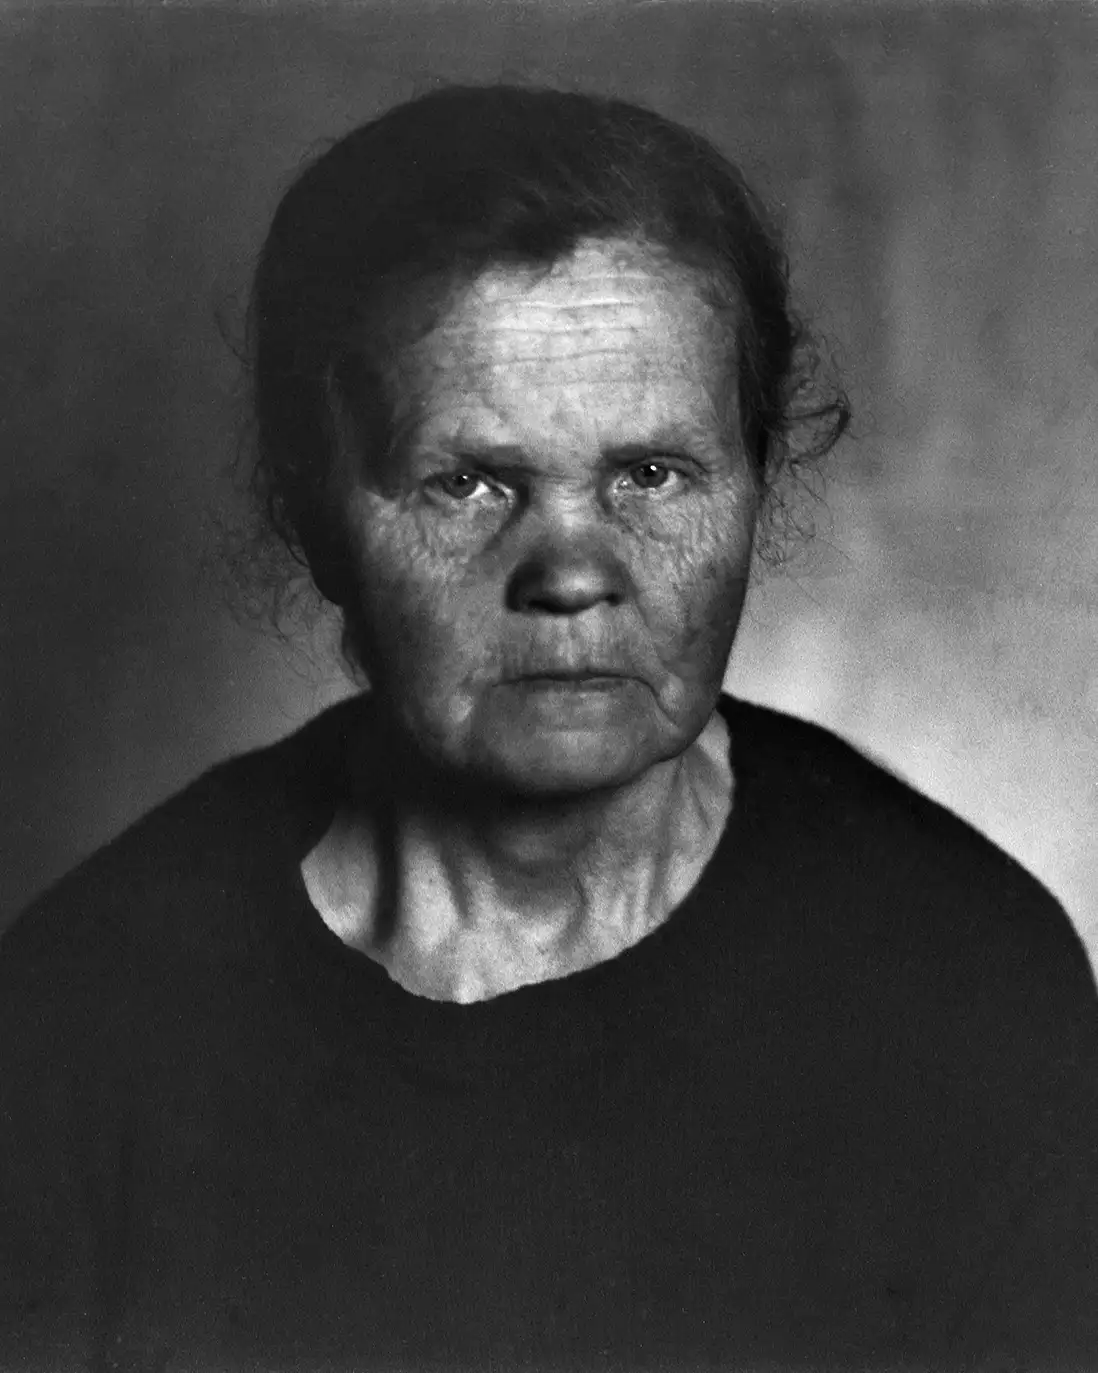 starsza kobieta w ciemnym ubraniu, portret studyjny, fotografia niedoświetlona